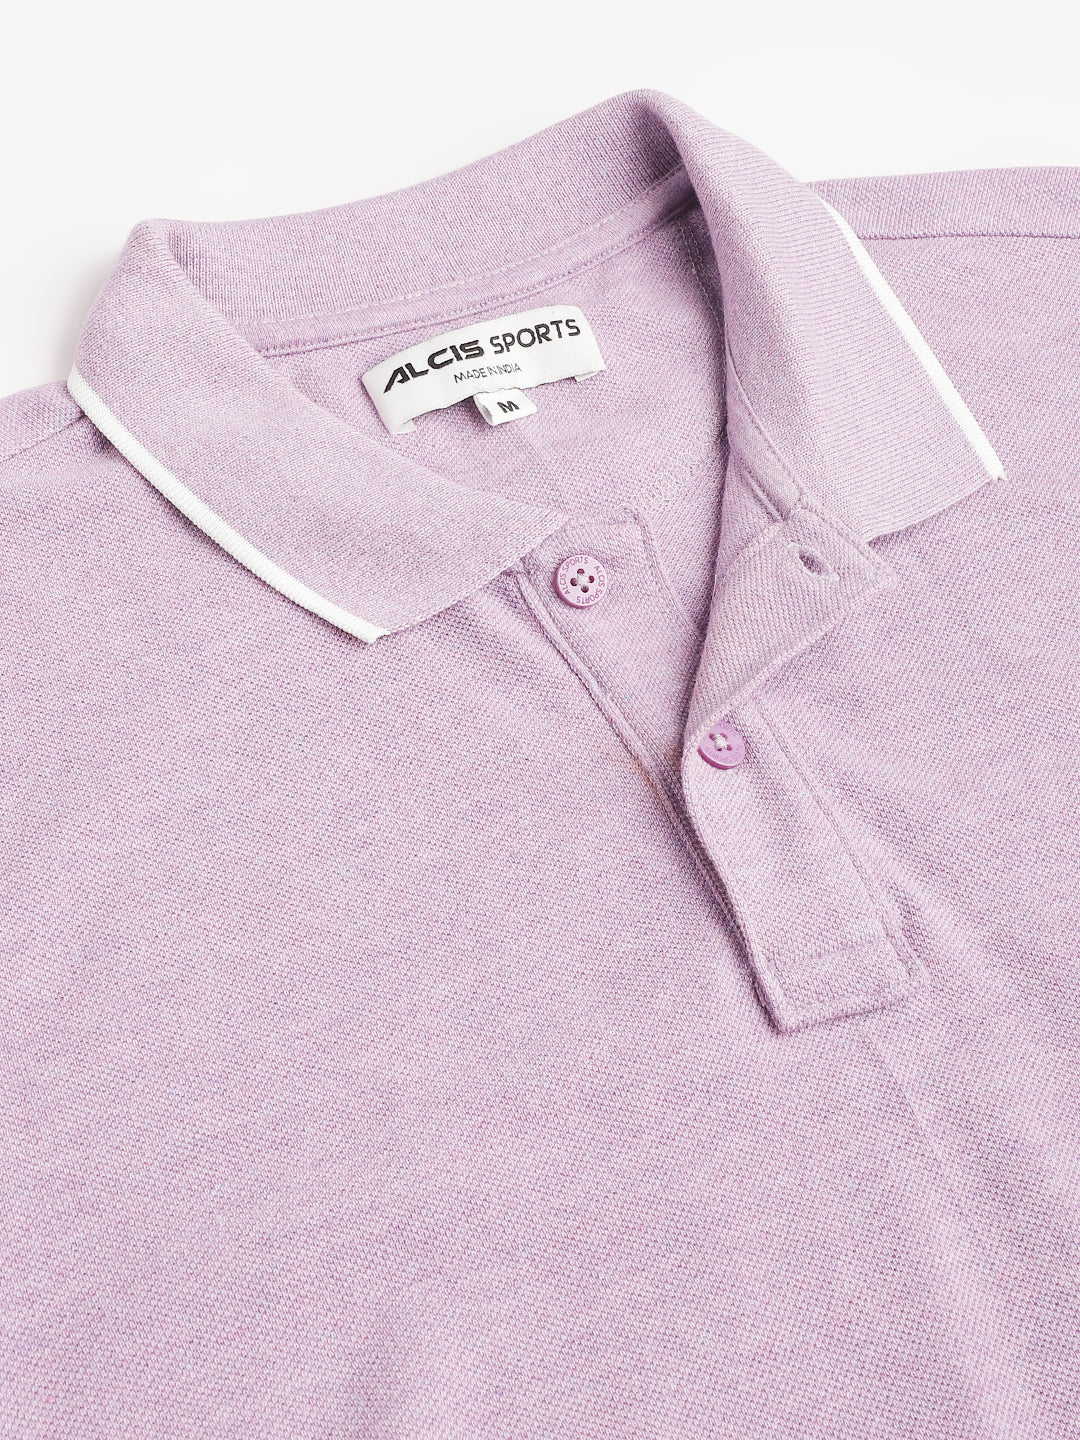 Alcis Men's Purple Melange Soft-Touch Regular-Fit Athleisure Polo T-Shirt